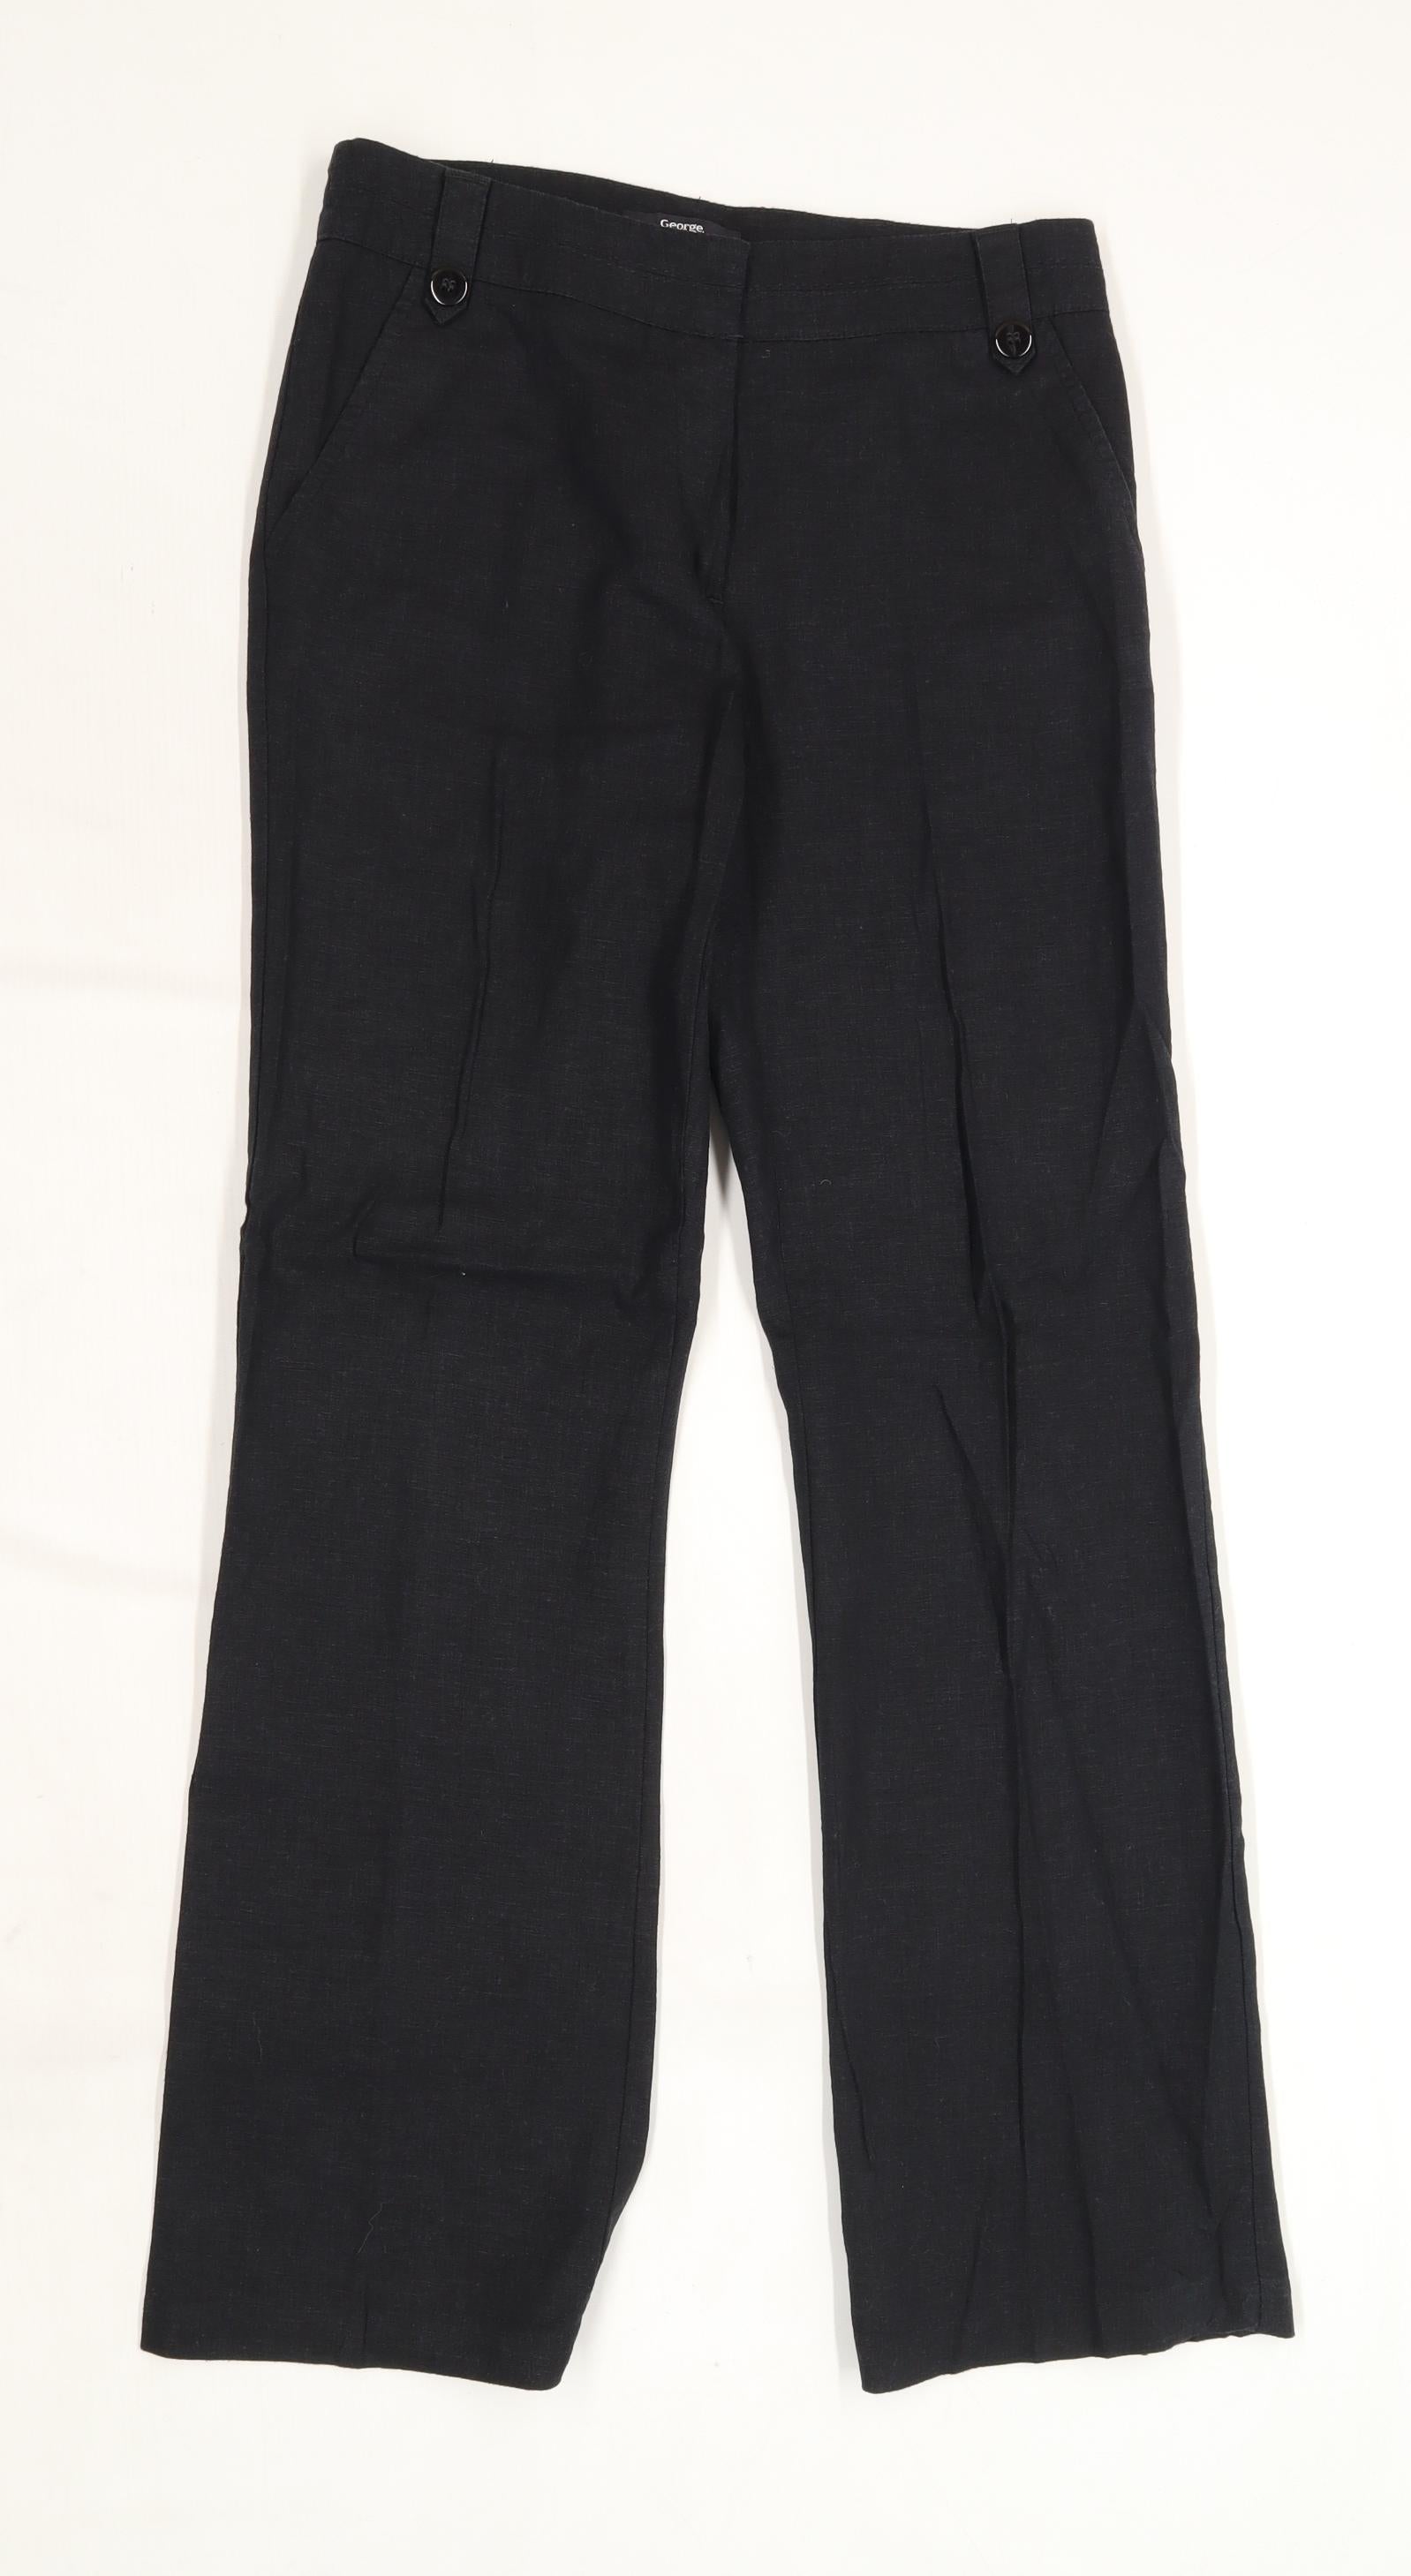 George Womens Black Dress Pants Trousers Size 10 L31 in – Preworn Ltd